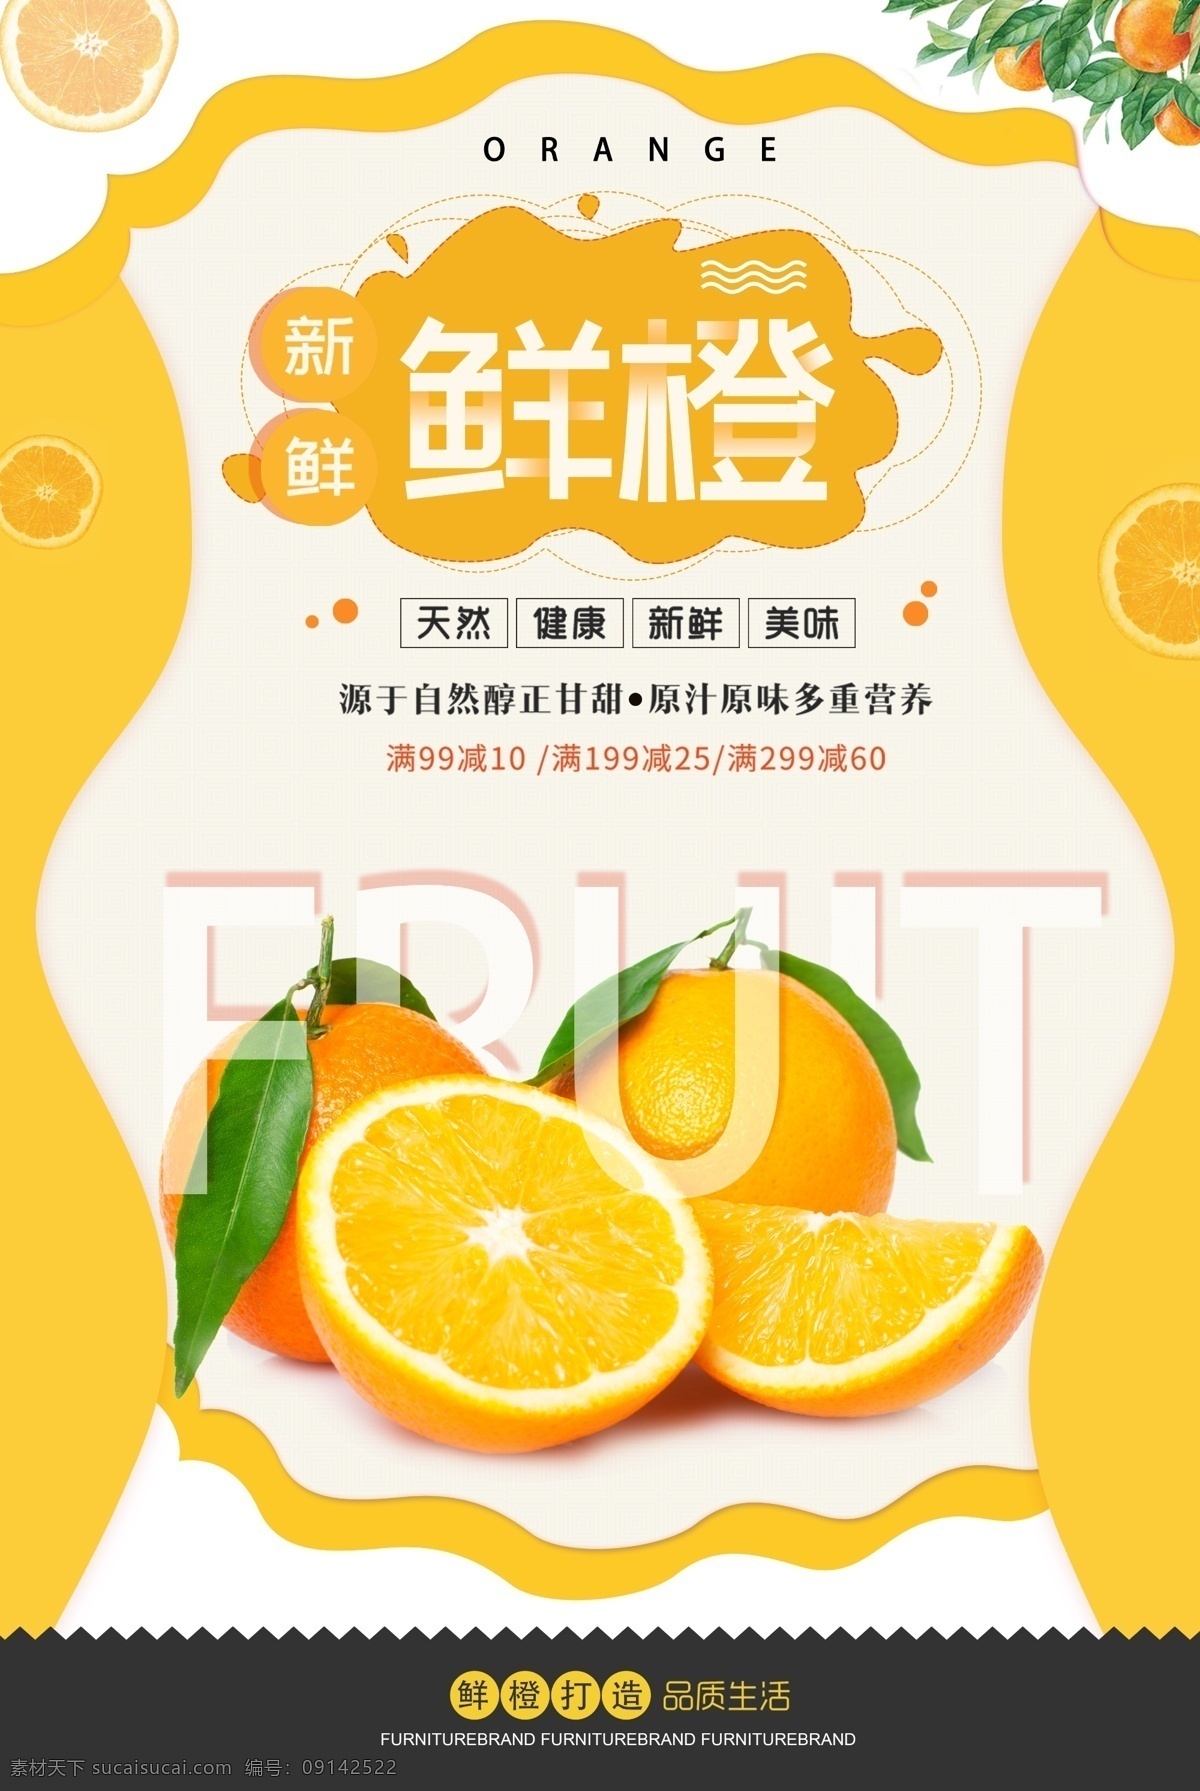 新鲜 橙子 水果 海报 促销 折扣 新鲜橙子 橘子水果 水果促销海报 新鲜水果 特惠 美味 鲜橙海报 橙子海报 水果海报